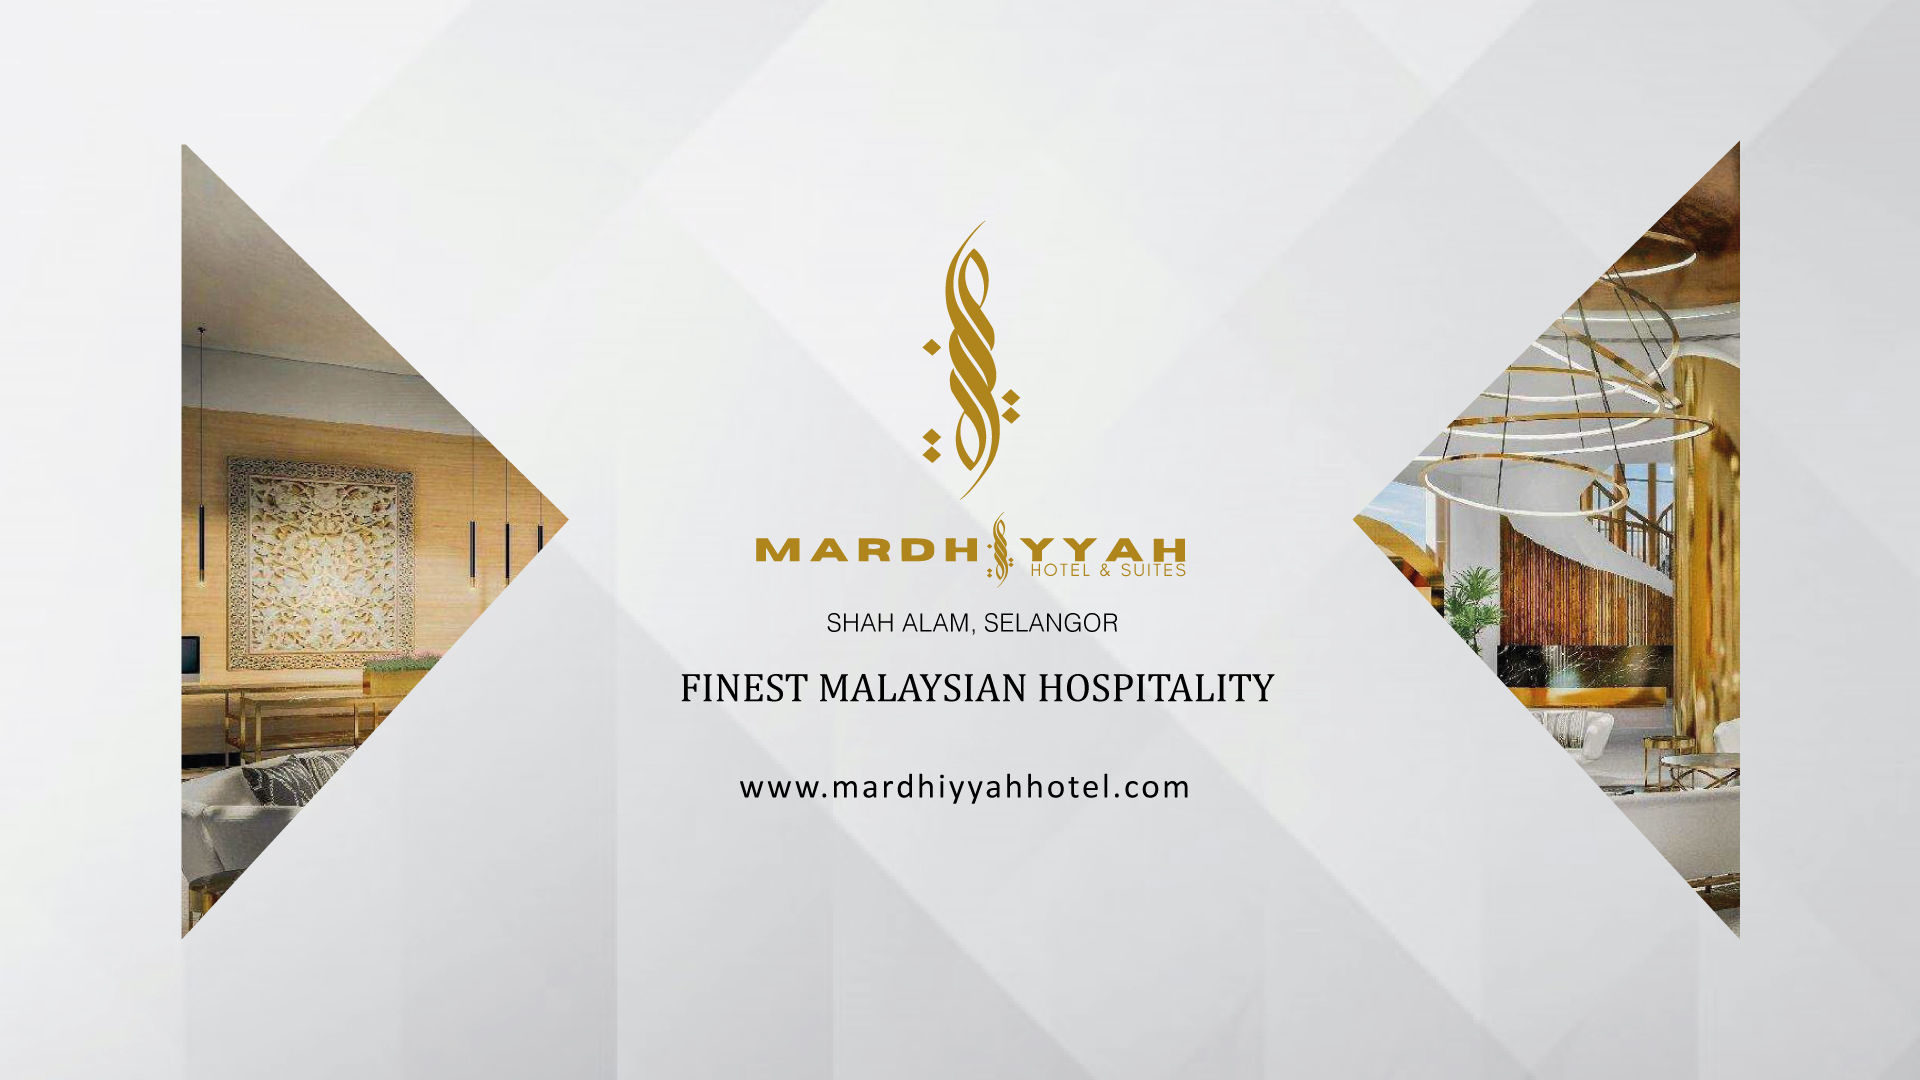 Mardiah hotel shah alam